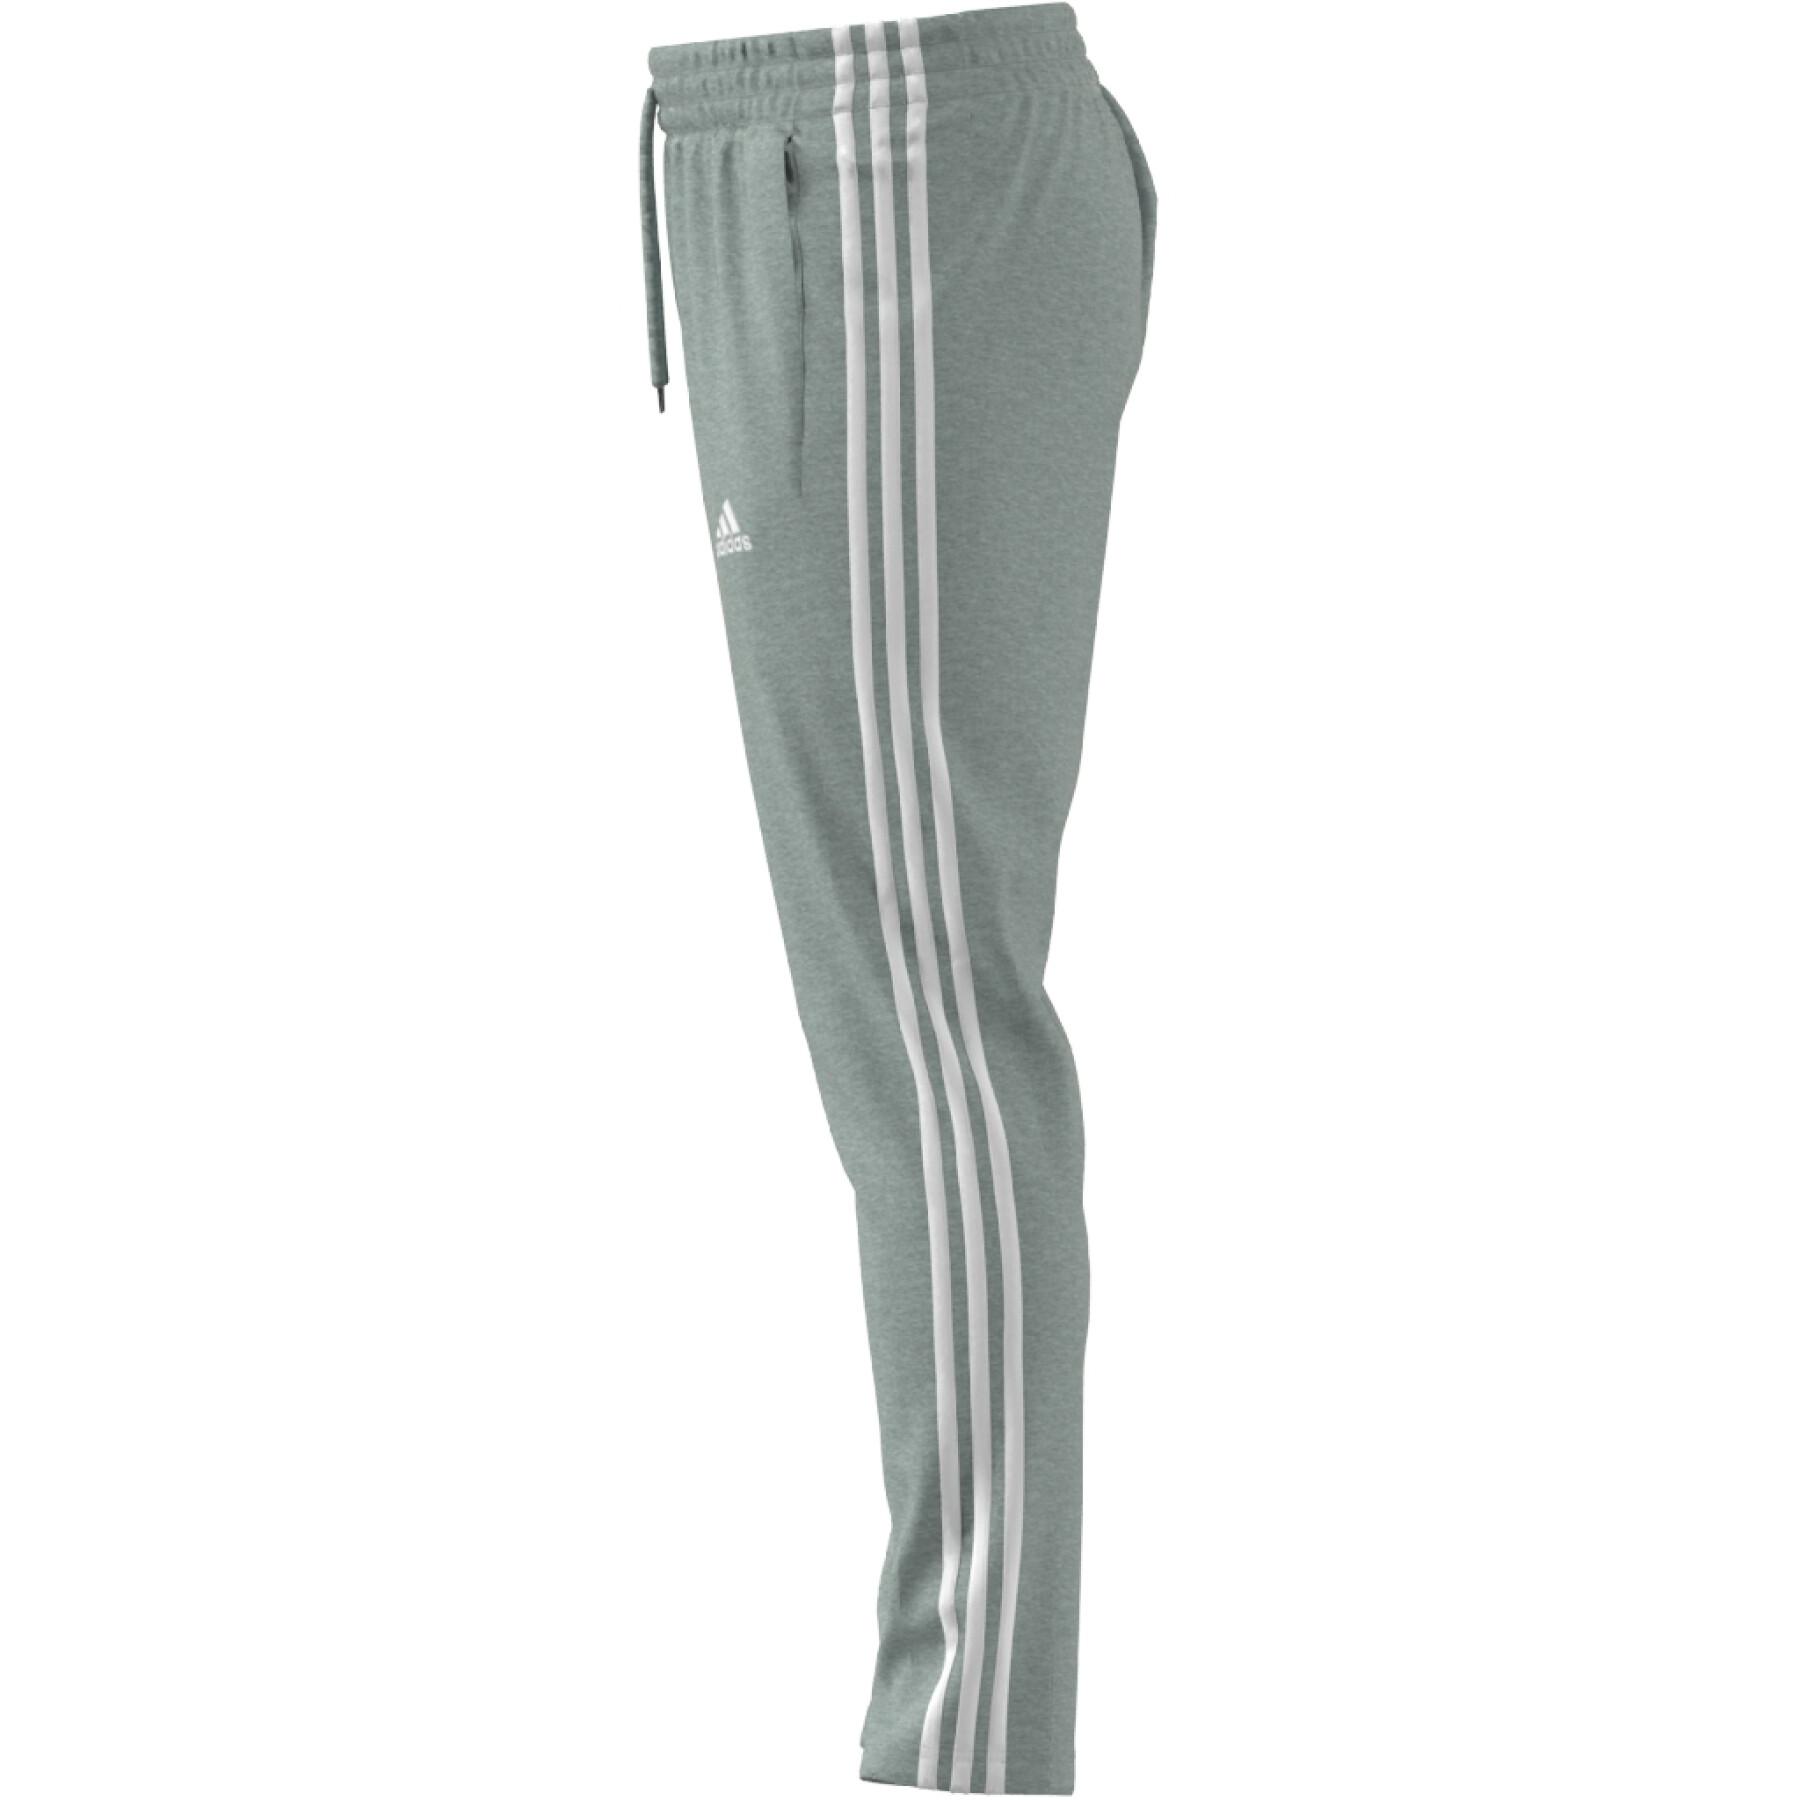 Jogging camisola de bainha aberta cónica simples adidas Essentials 3-Stripes